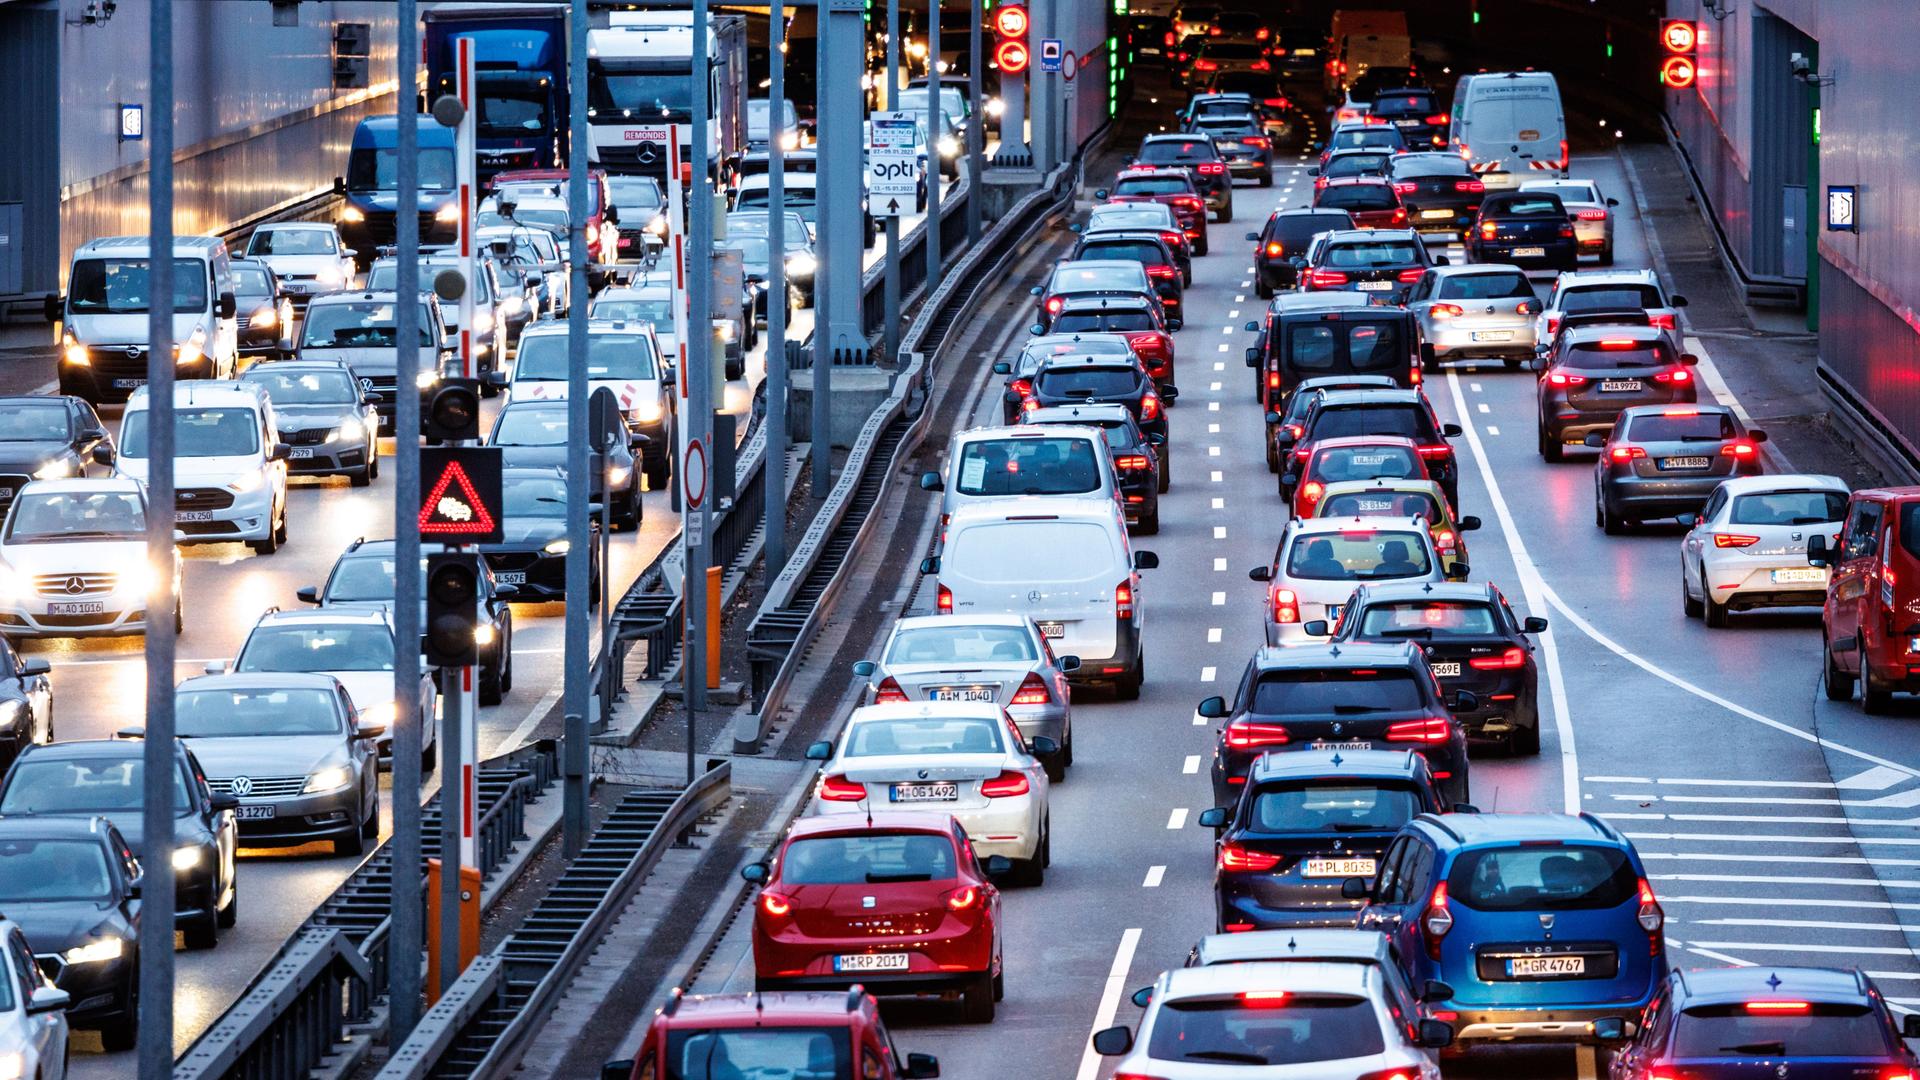 Klimaziele im Verkehrssektor - Unionsfraktion fordert Entscheidung des Bundeskanzlers